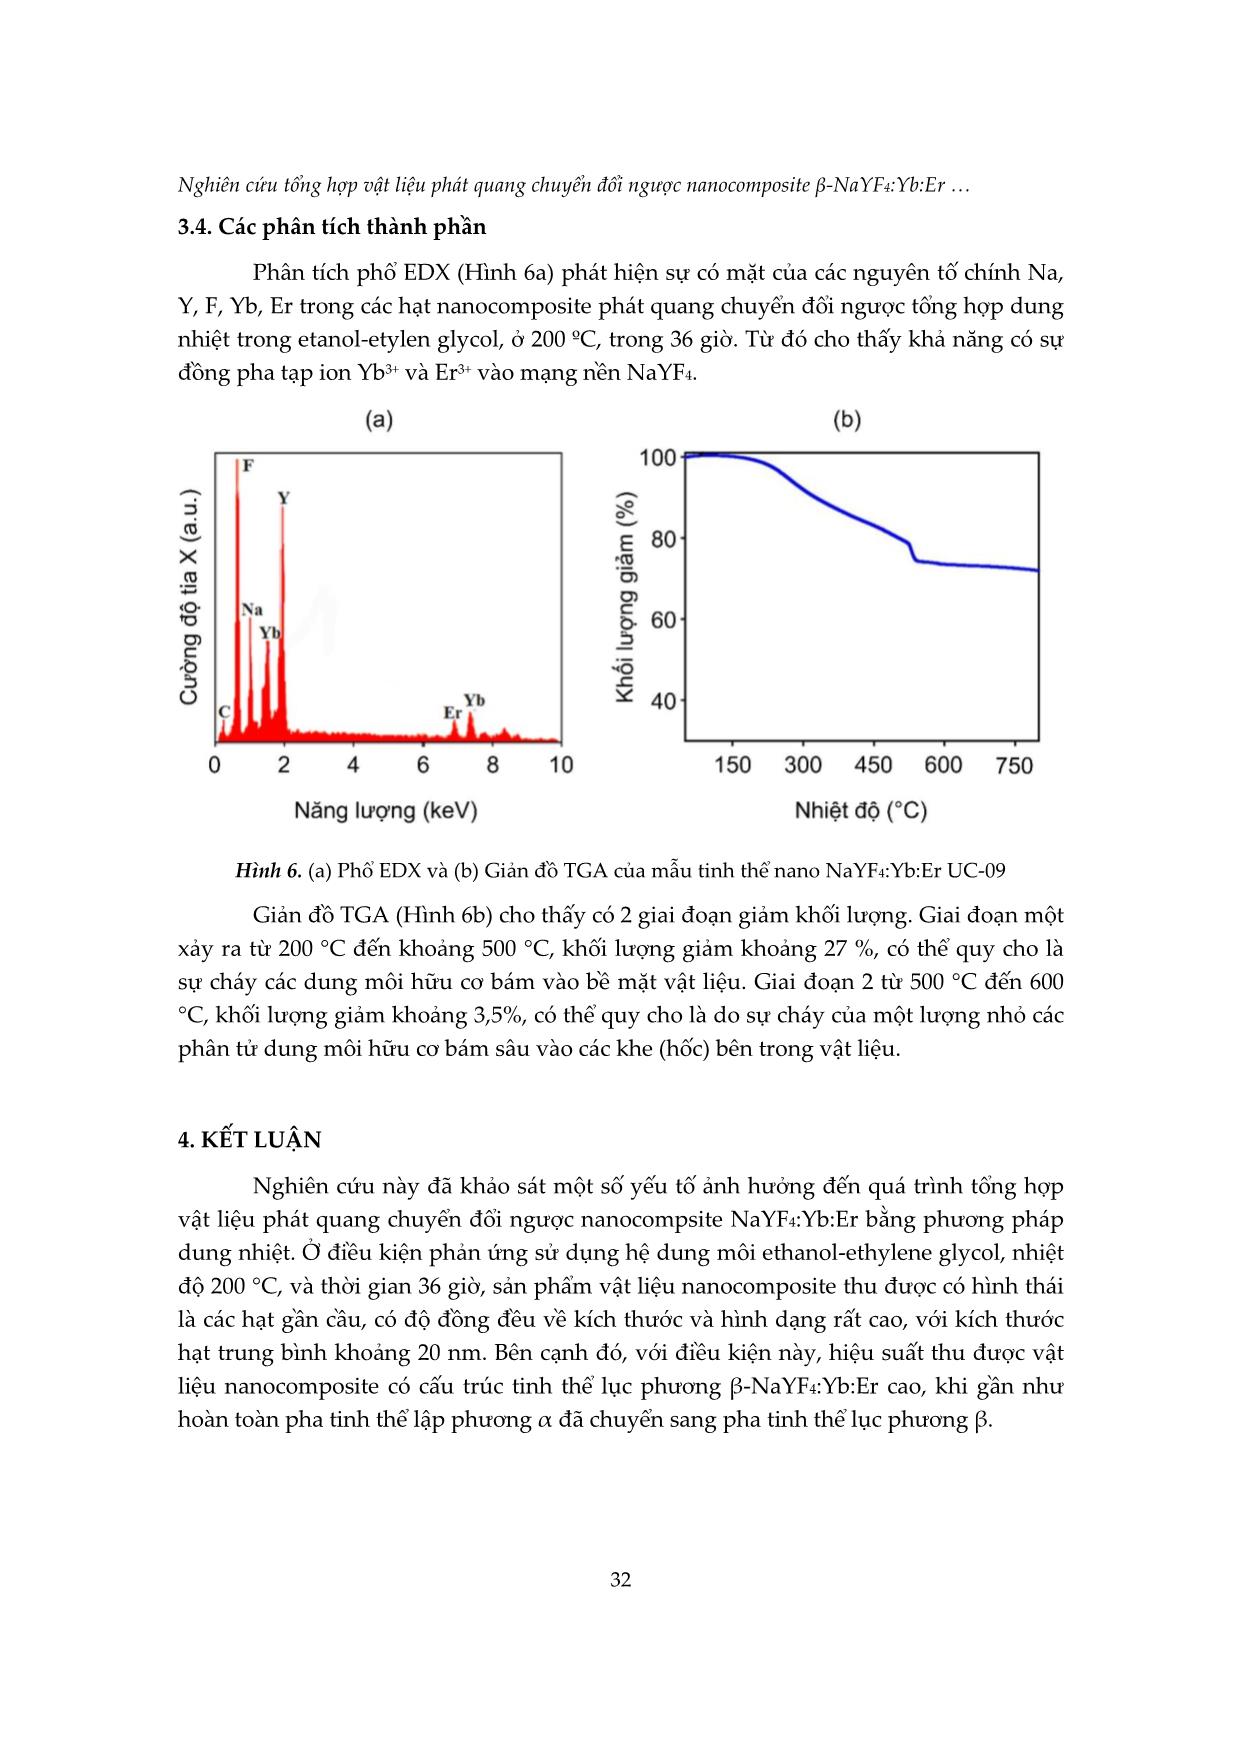 Nghiên cứu tổng hợp vật liệu phát quang chuyển đổi ngược nanocomposite β-NaYF4:Yb:Er bằng phương pháp dung nhiệt trang 8